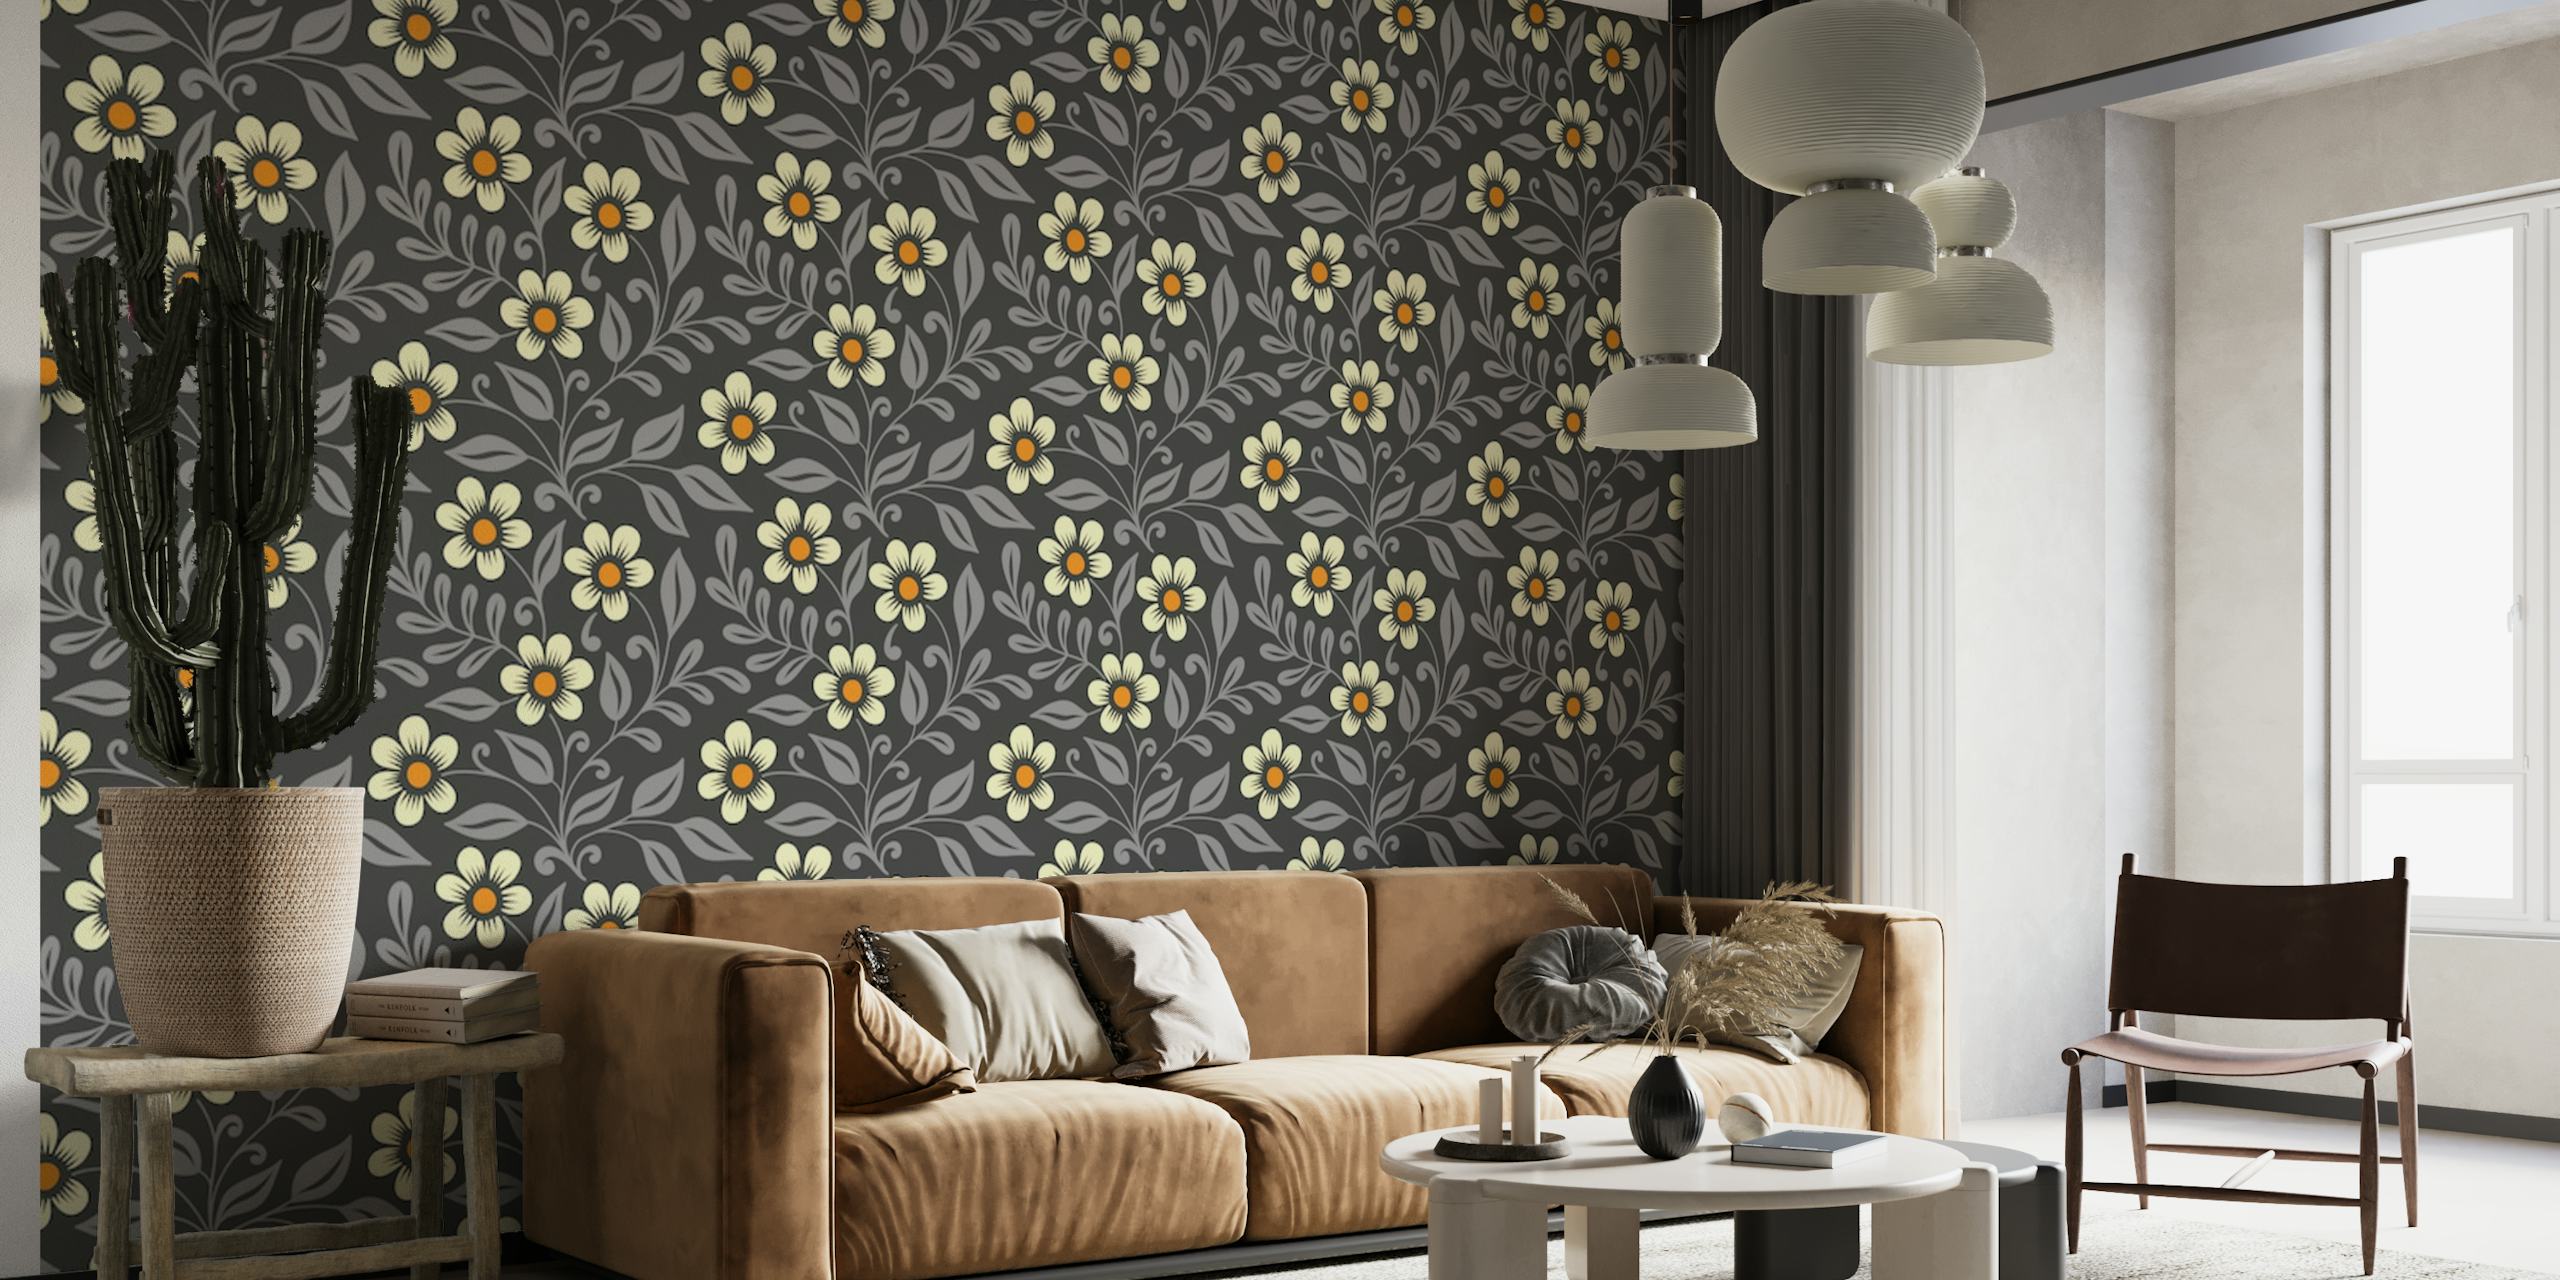 Fotomural vinílico de parede encantador com padrão floral e pequenas flores em um fundo cinza